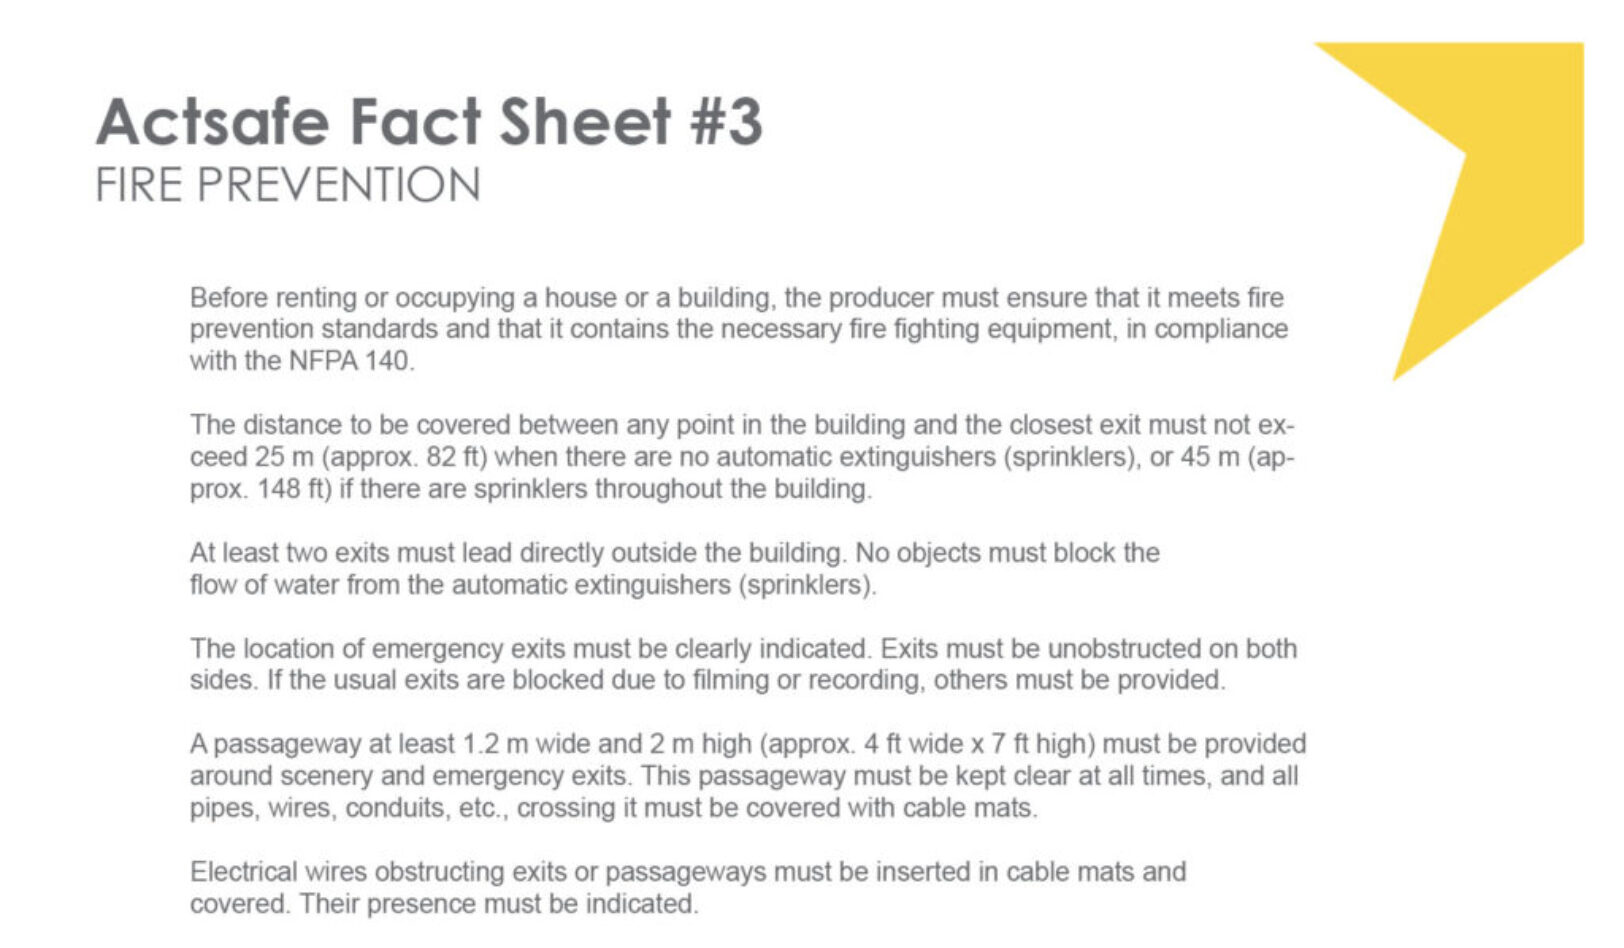 Fire Prevention Fact Sheet